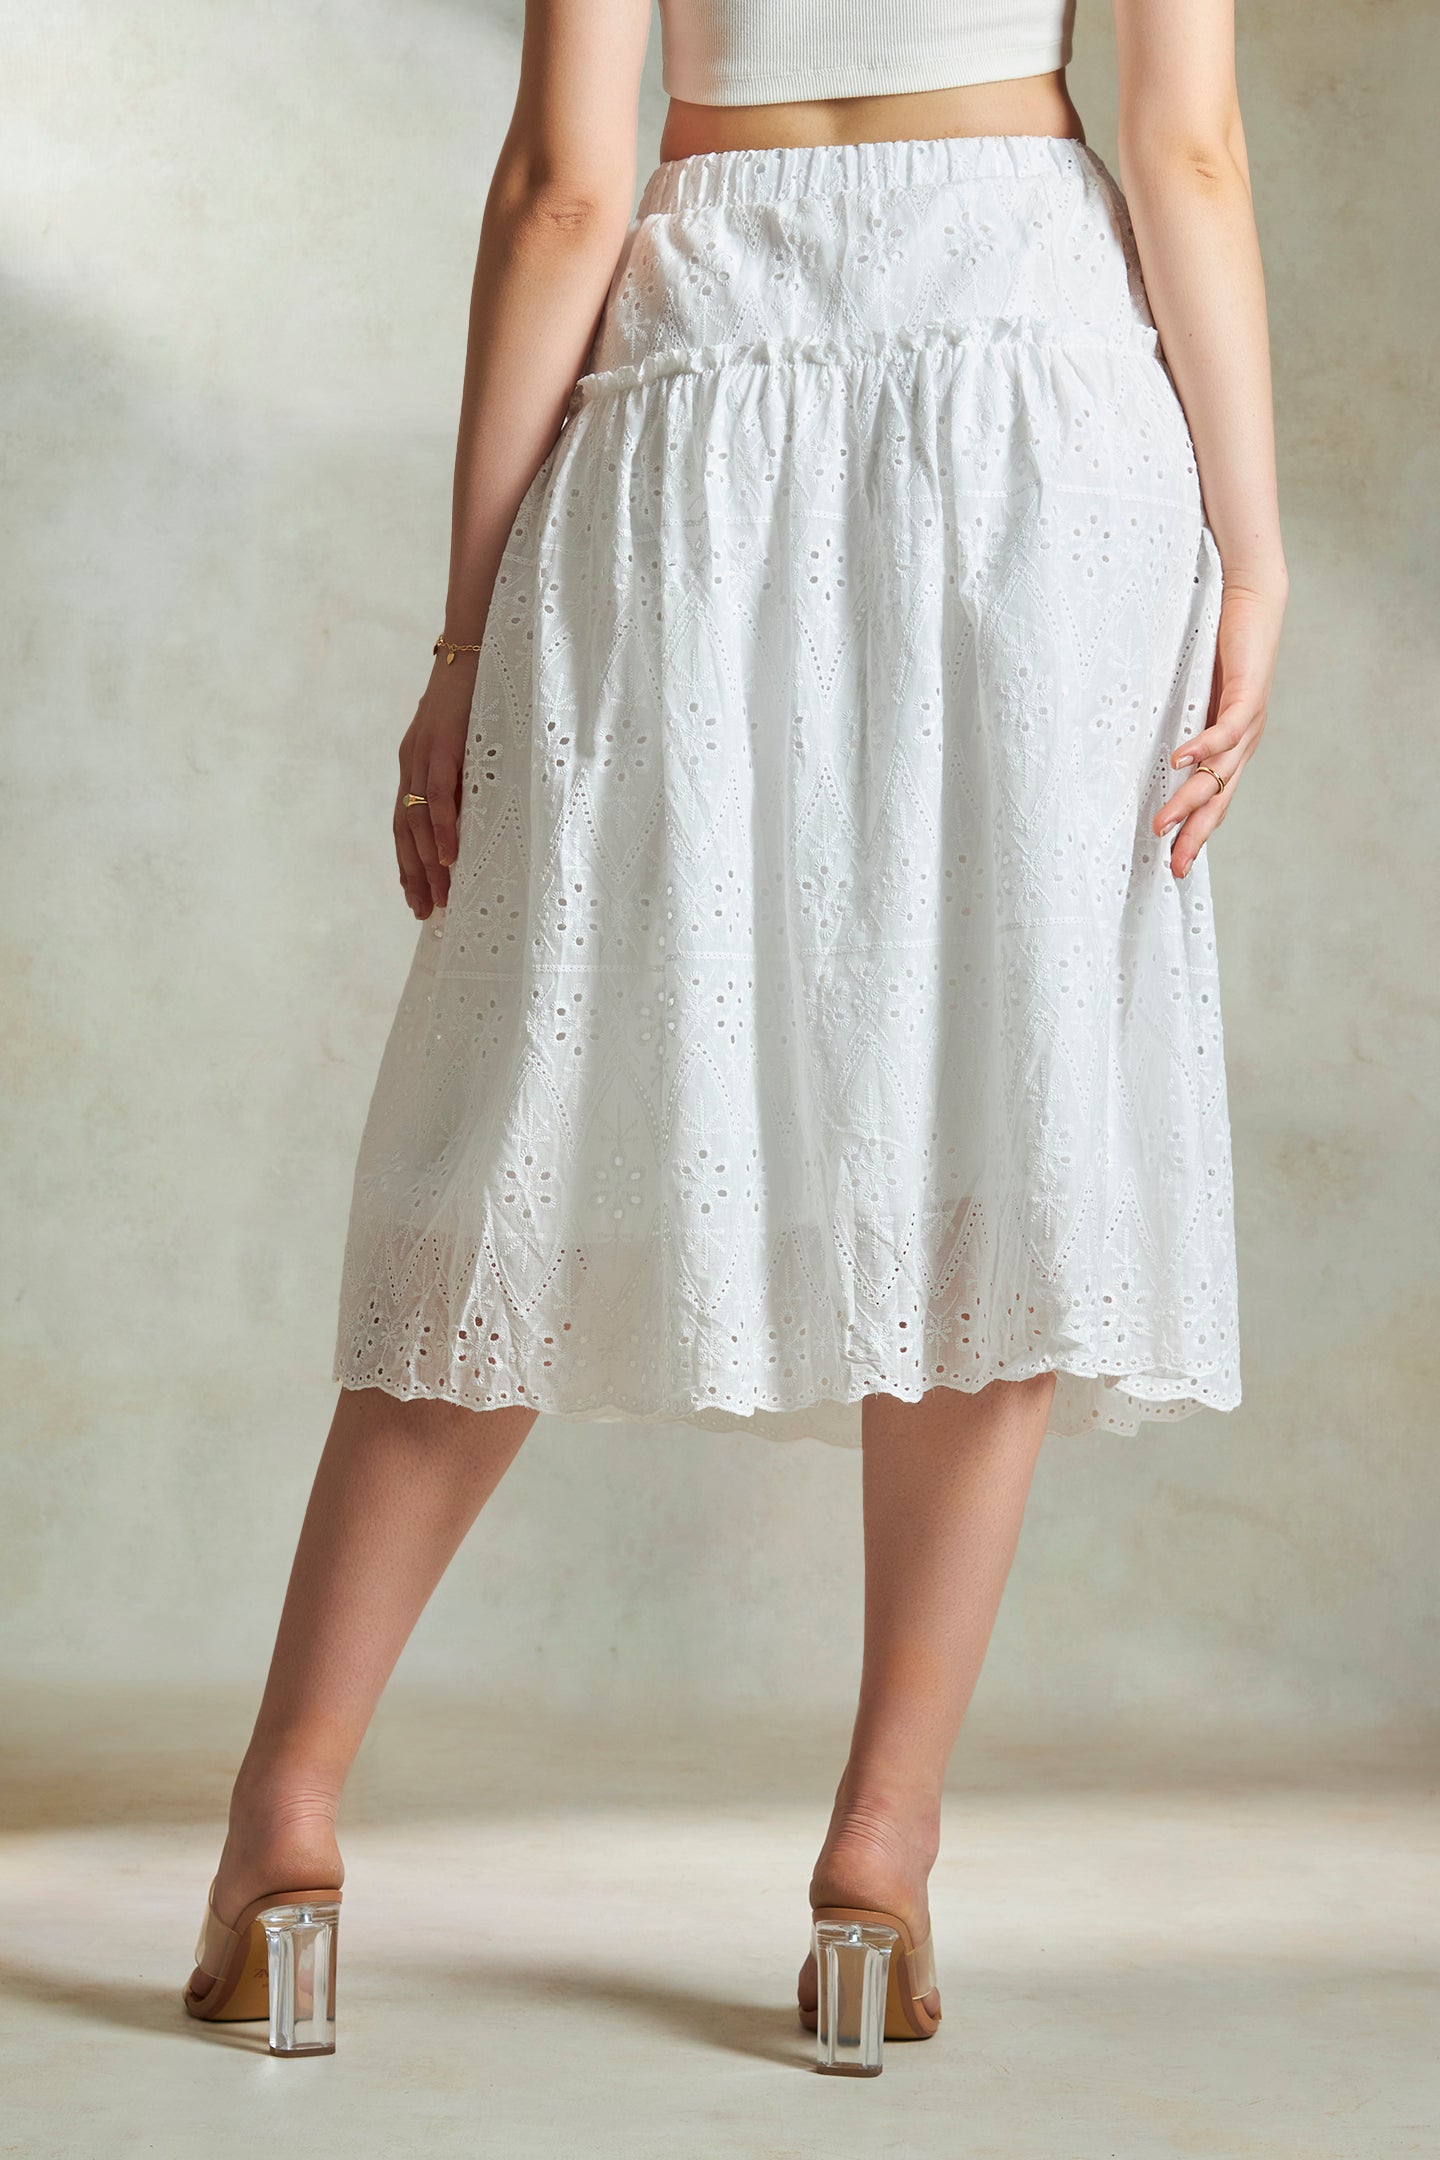 Zuriel|Glam cotton schiffli maxi skirt